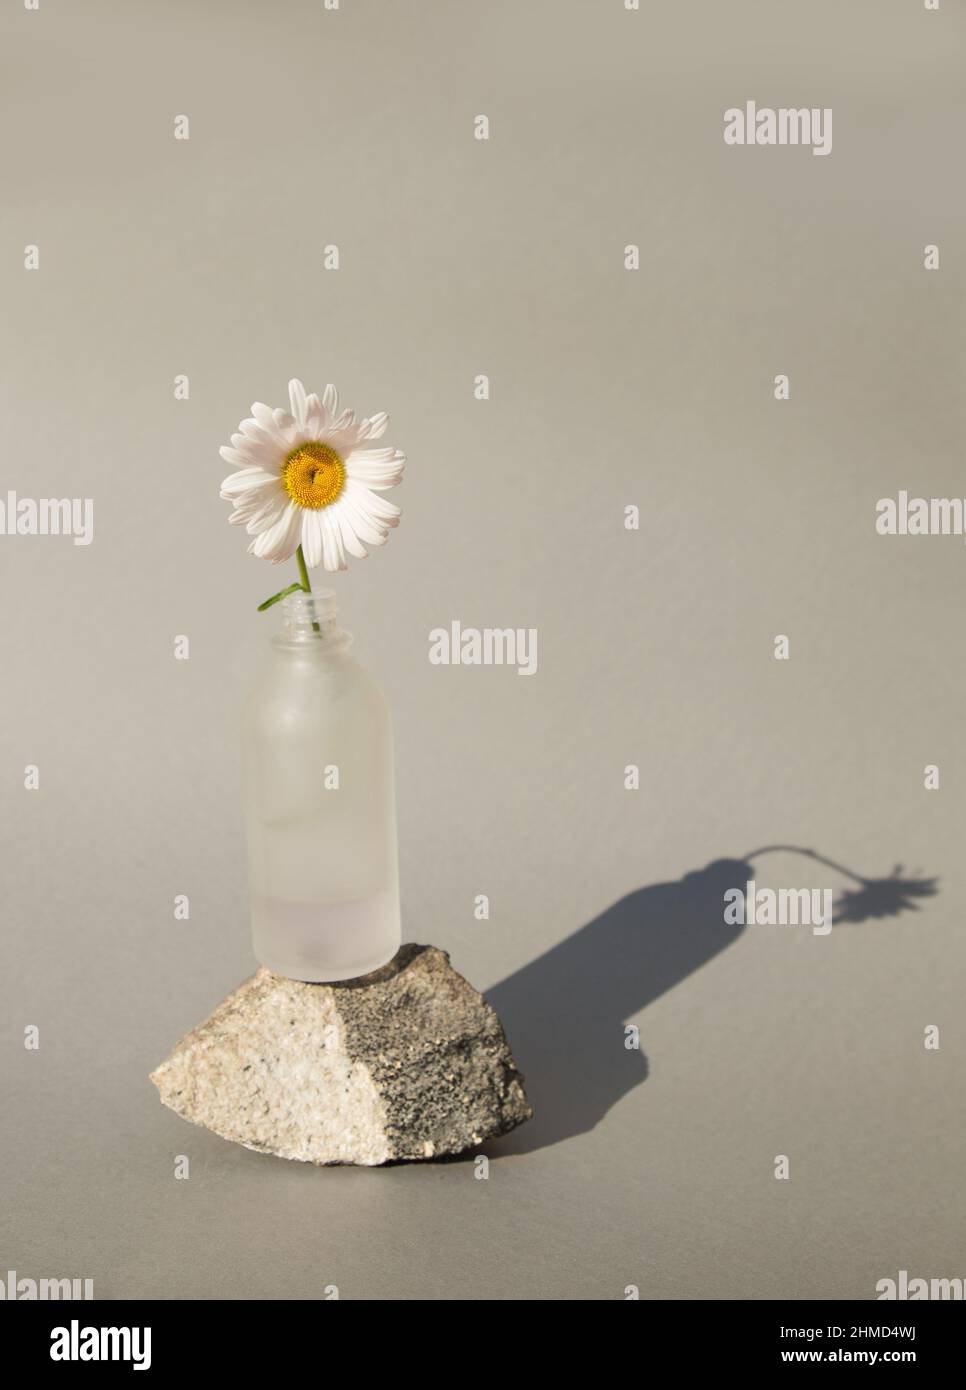 fleur de camomille dans un vase en verre debout sur une pierre sur un fond gris neutre avec des ombres dures. Minimalisme, simplicité Banque D'Images